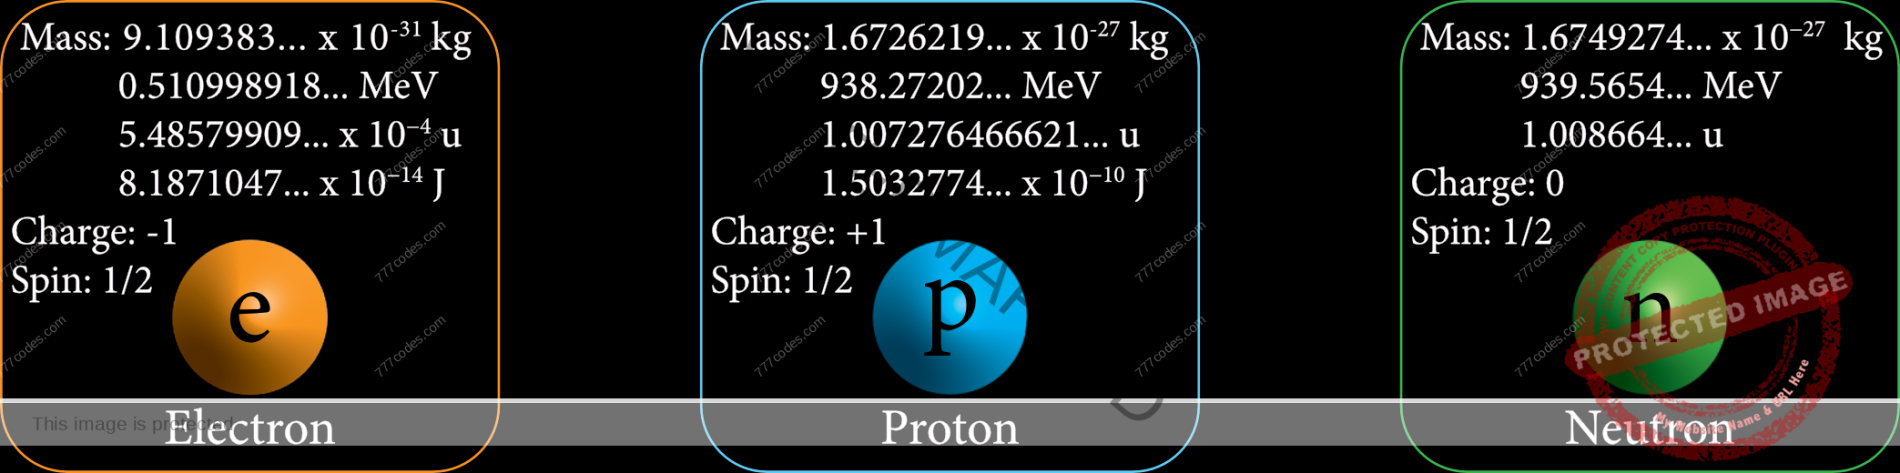 Electron, Proton and Neutron properties